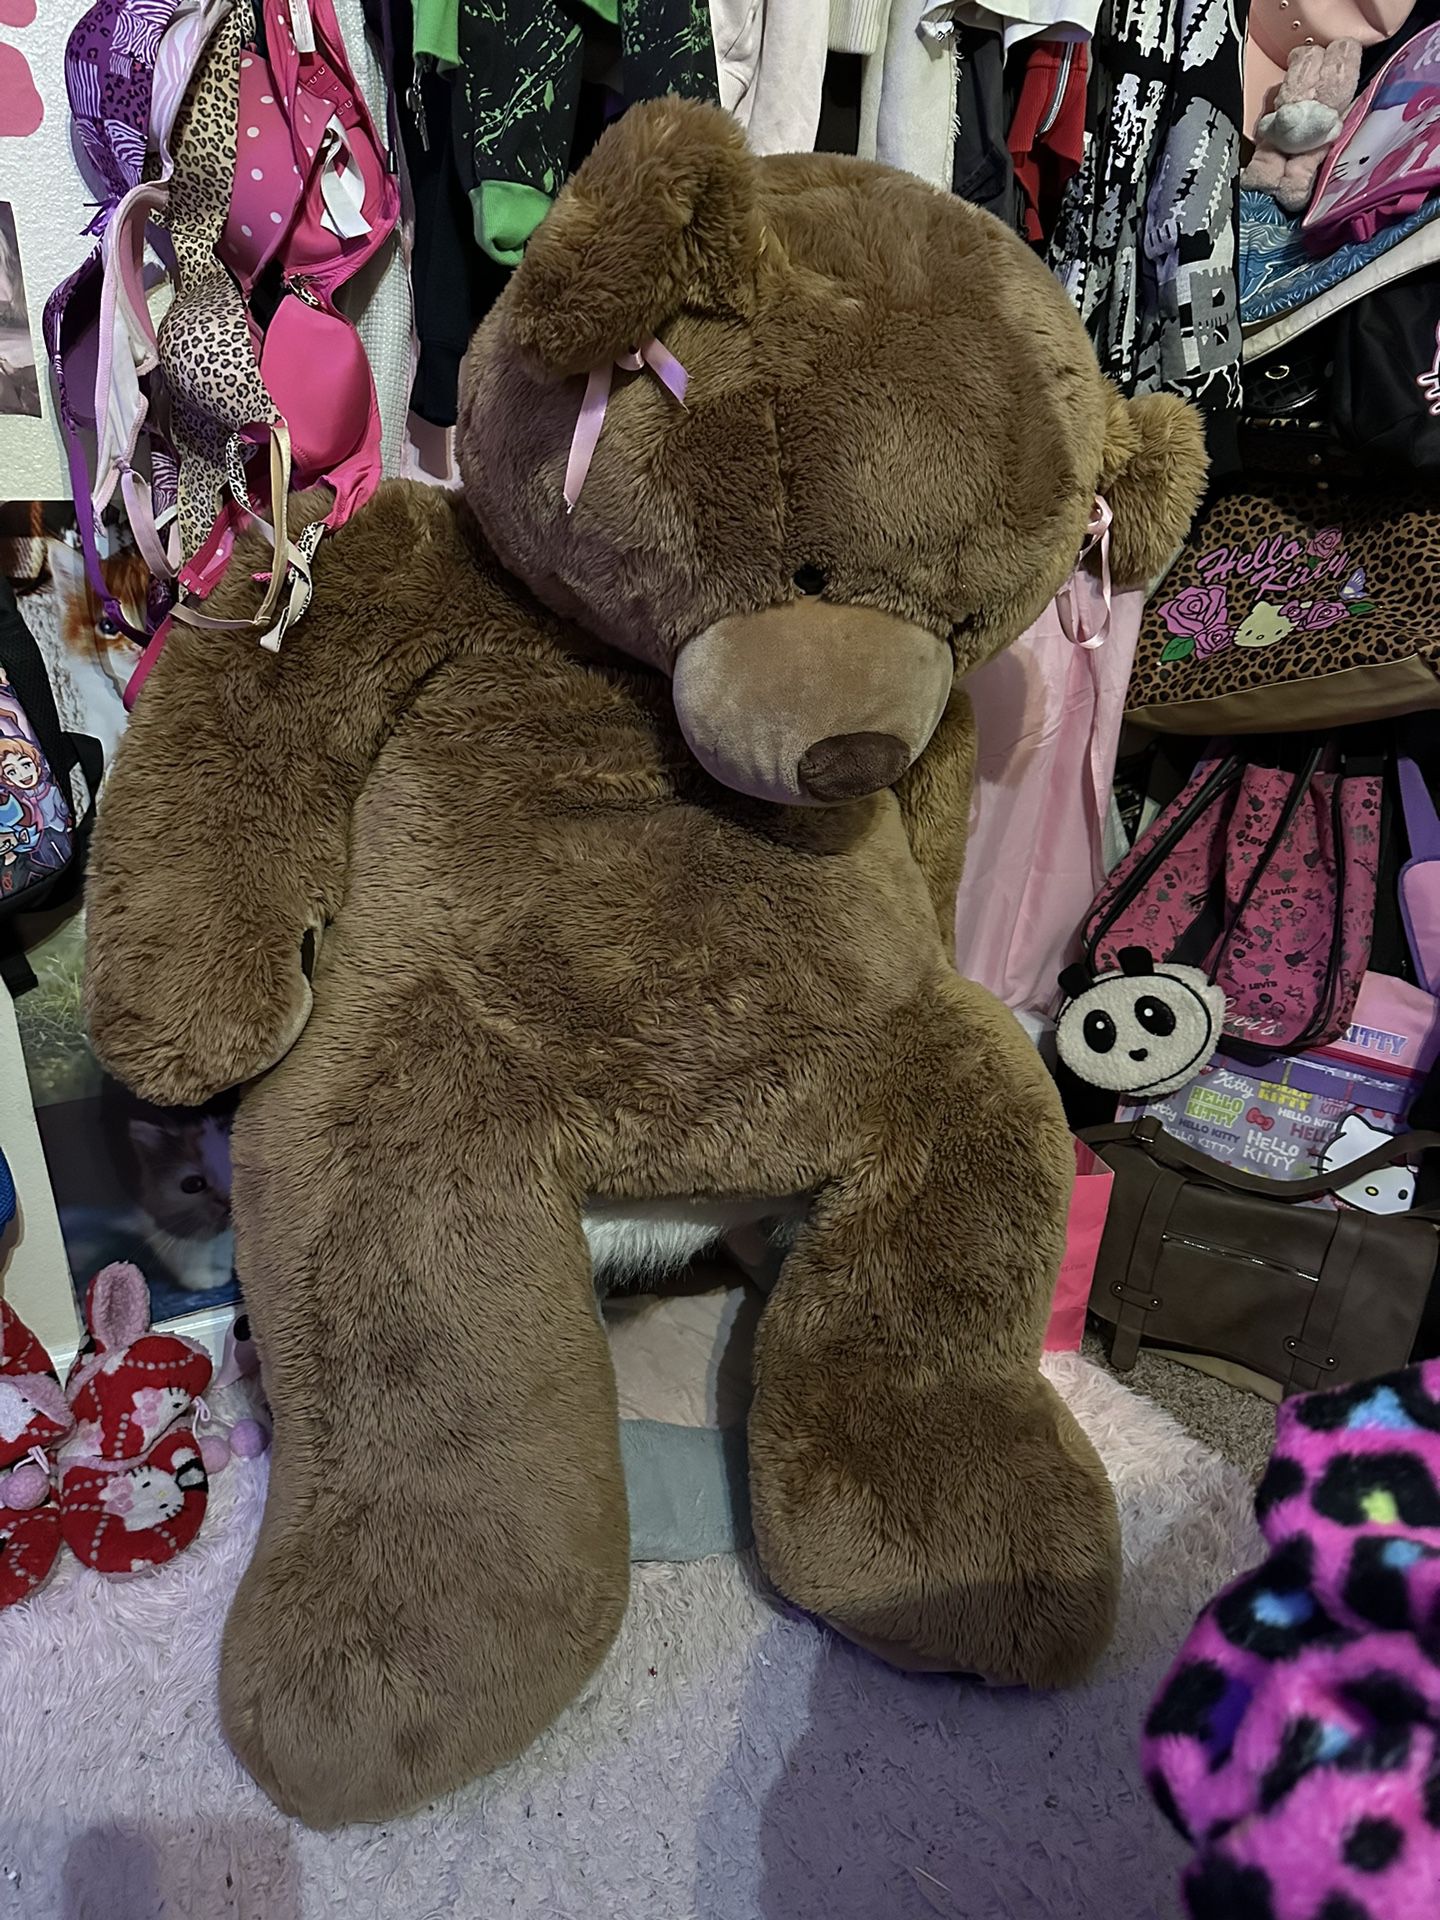 Adult Life Size Teddy Bear